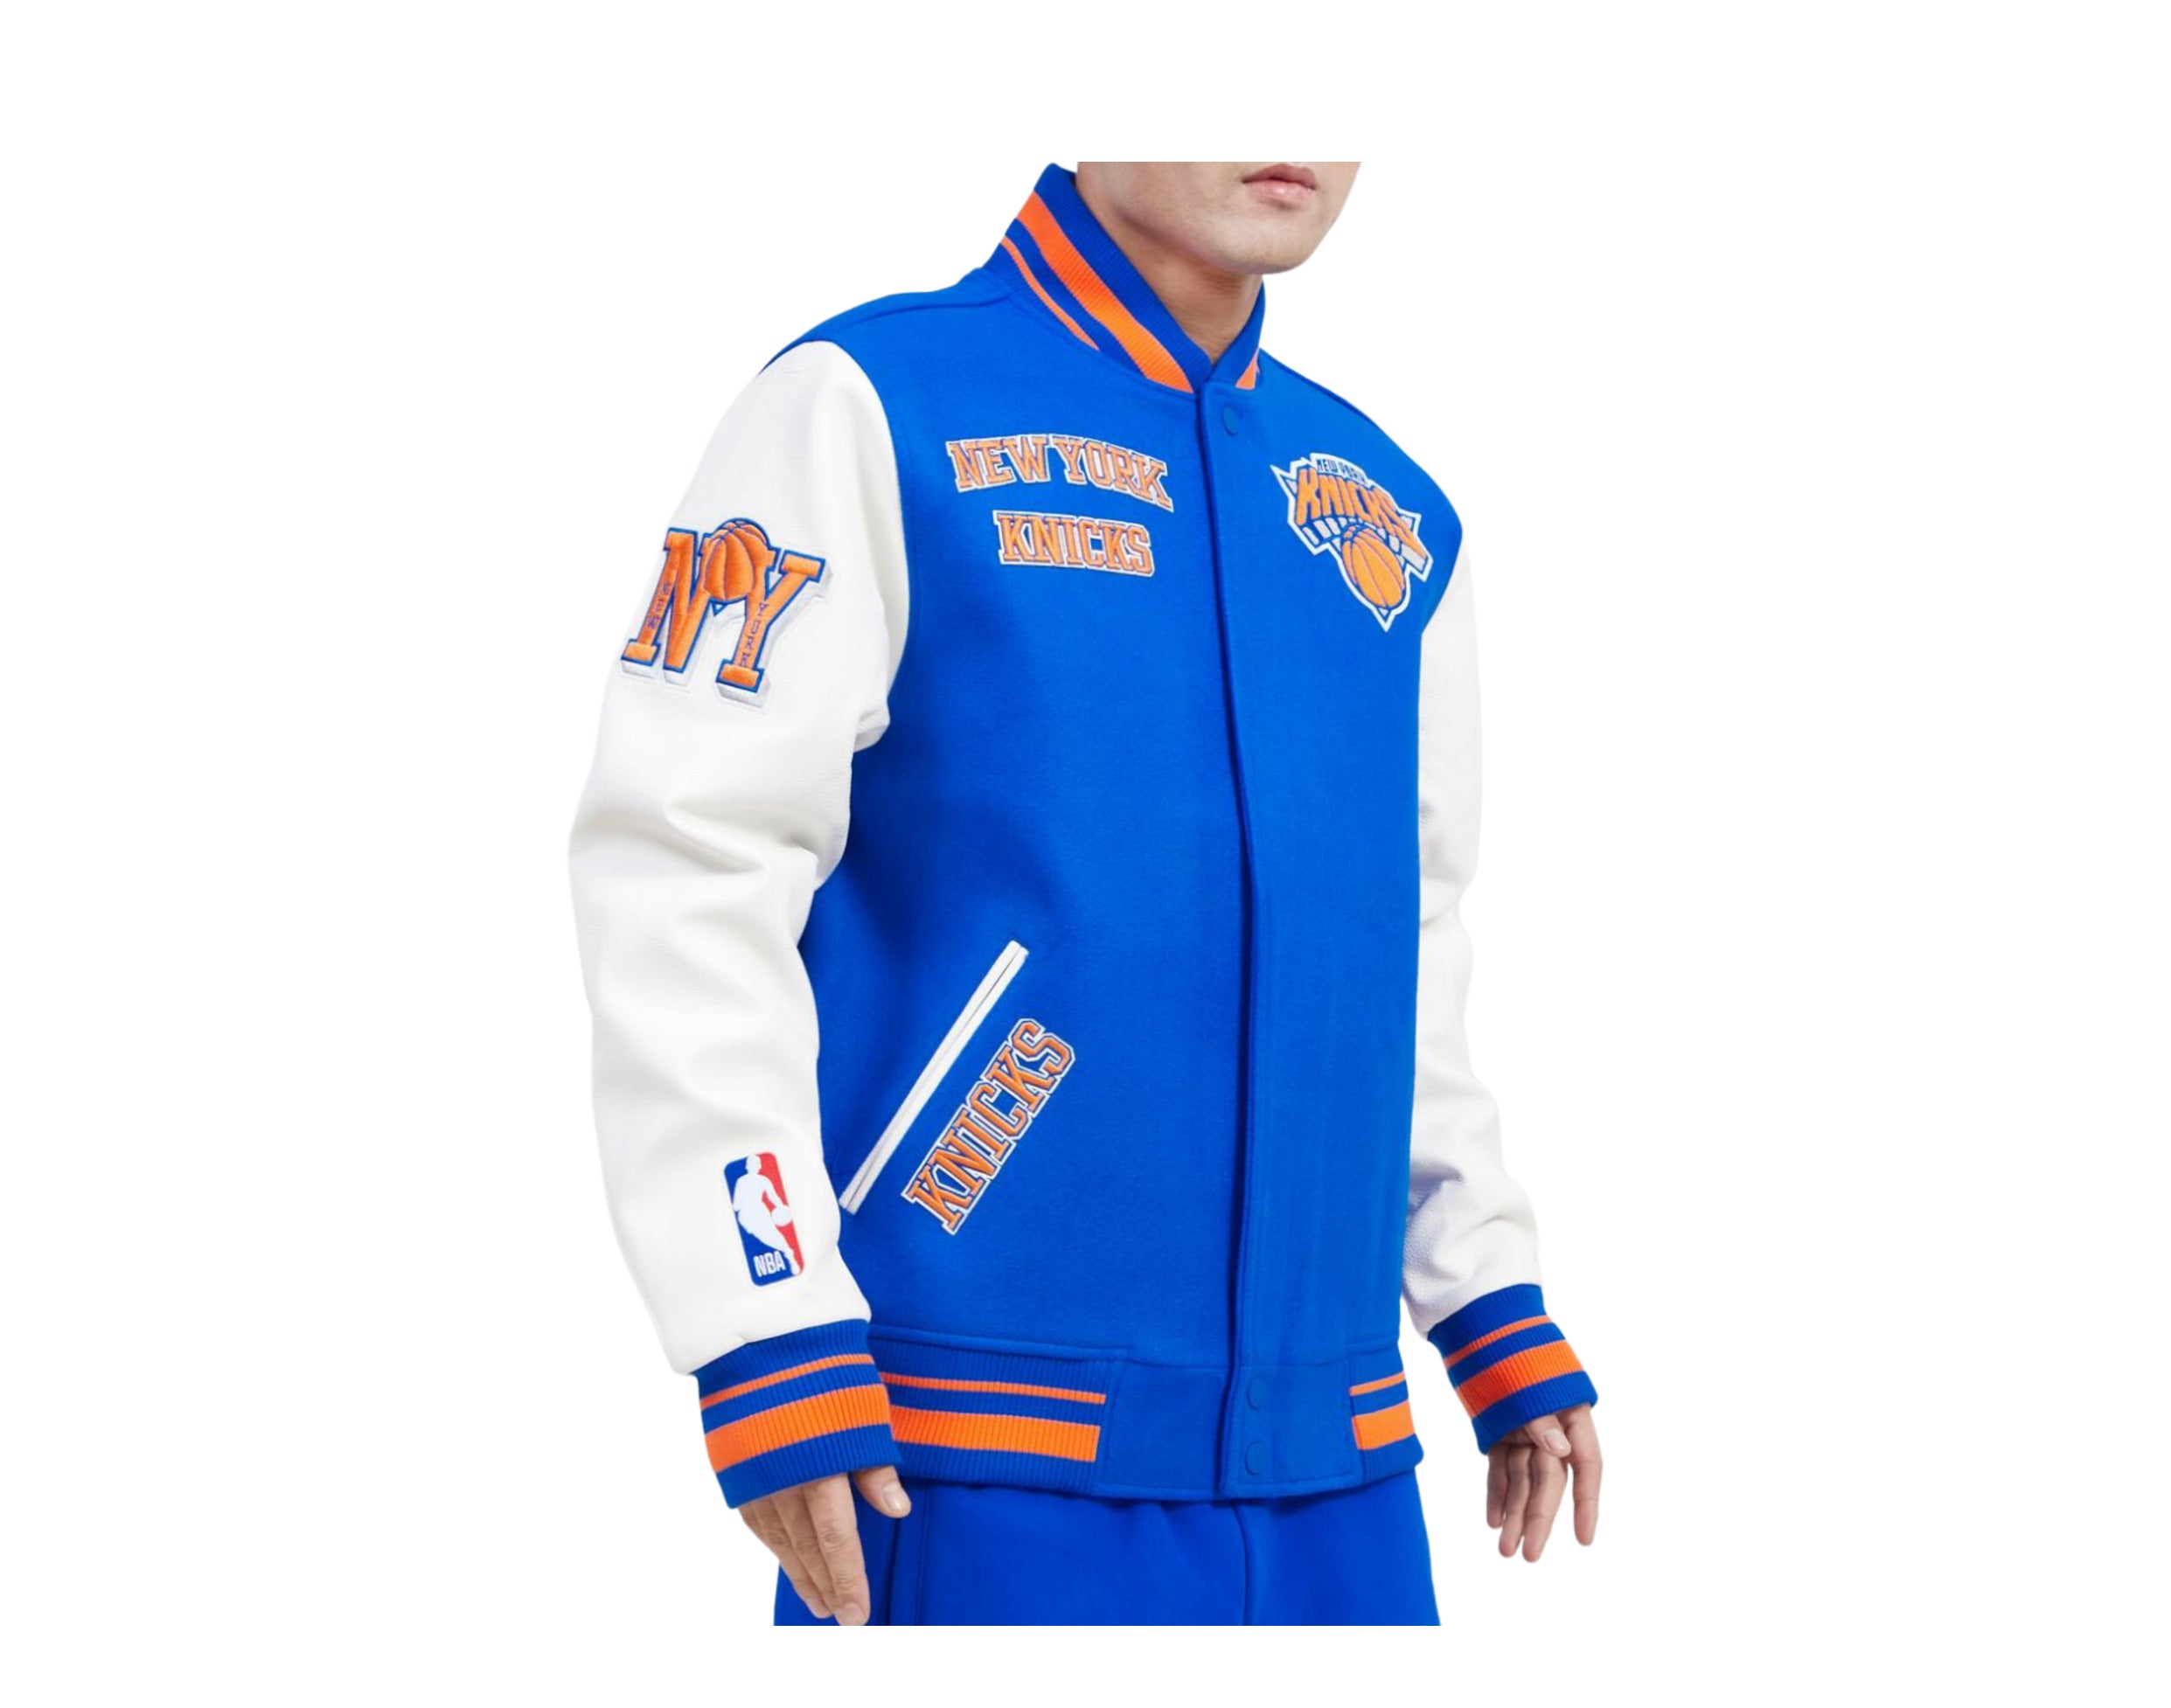 NY Knicks Blue and Orange Varsity Jacket